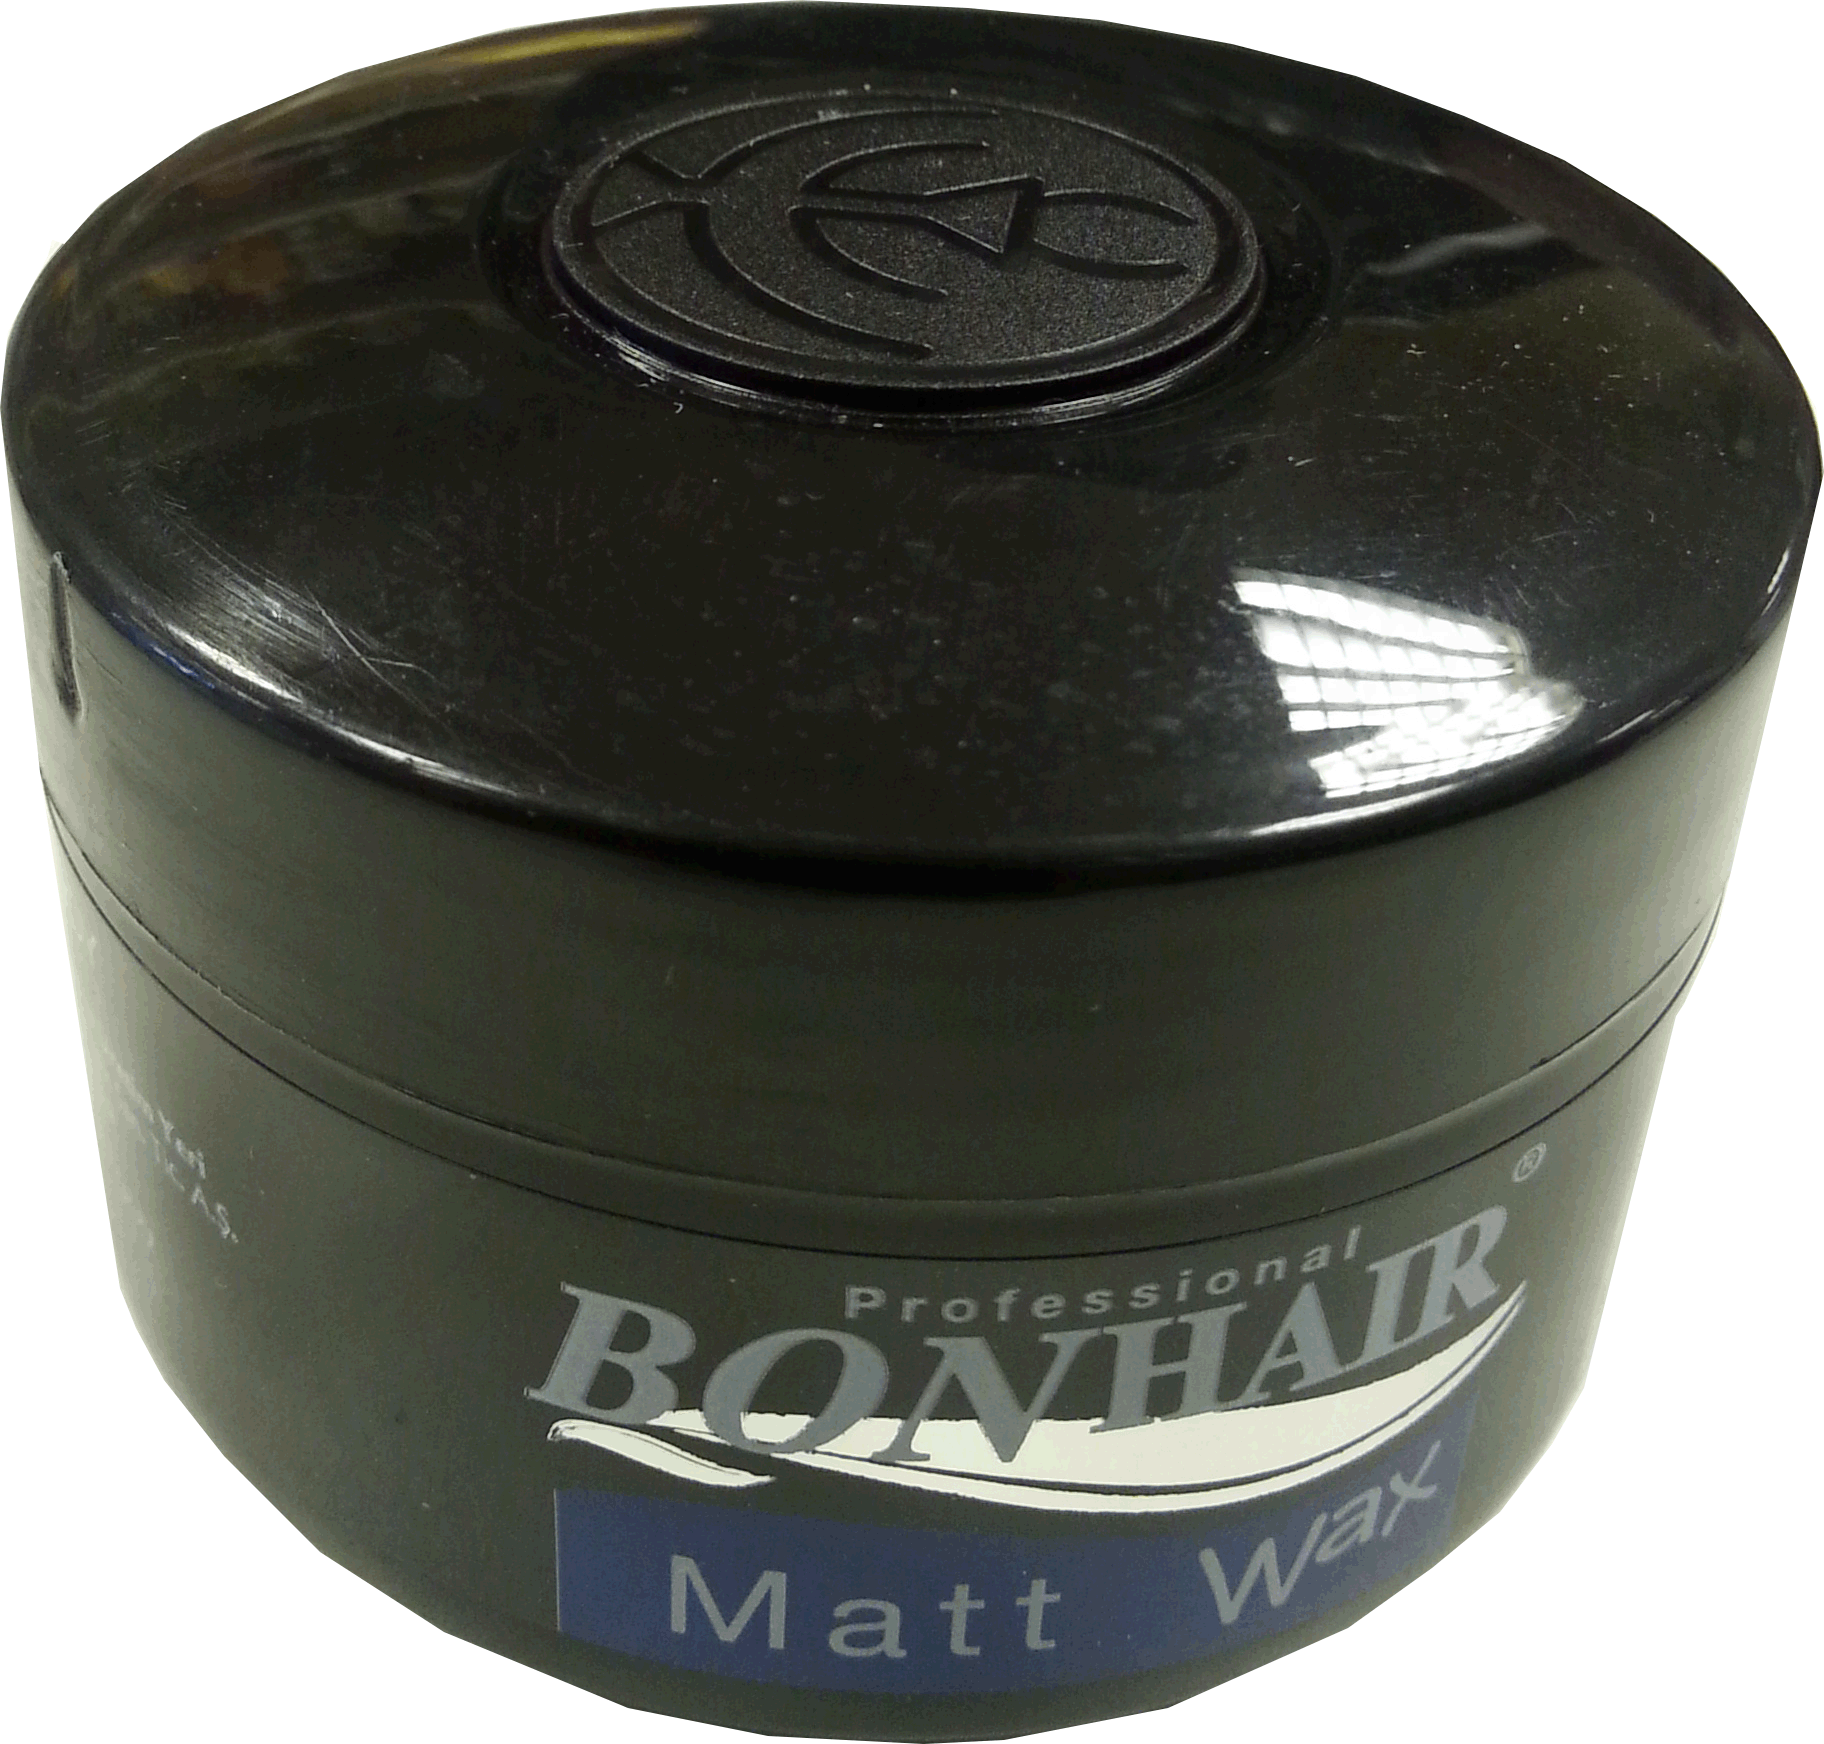 Bonhair Mat Wax 140 ml